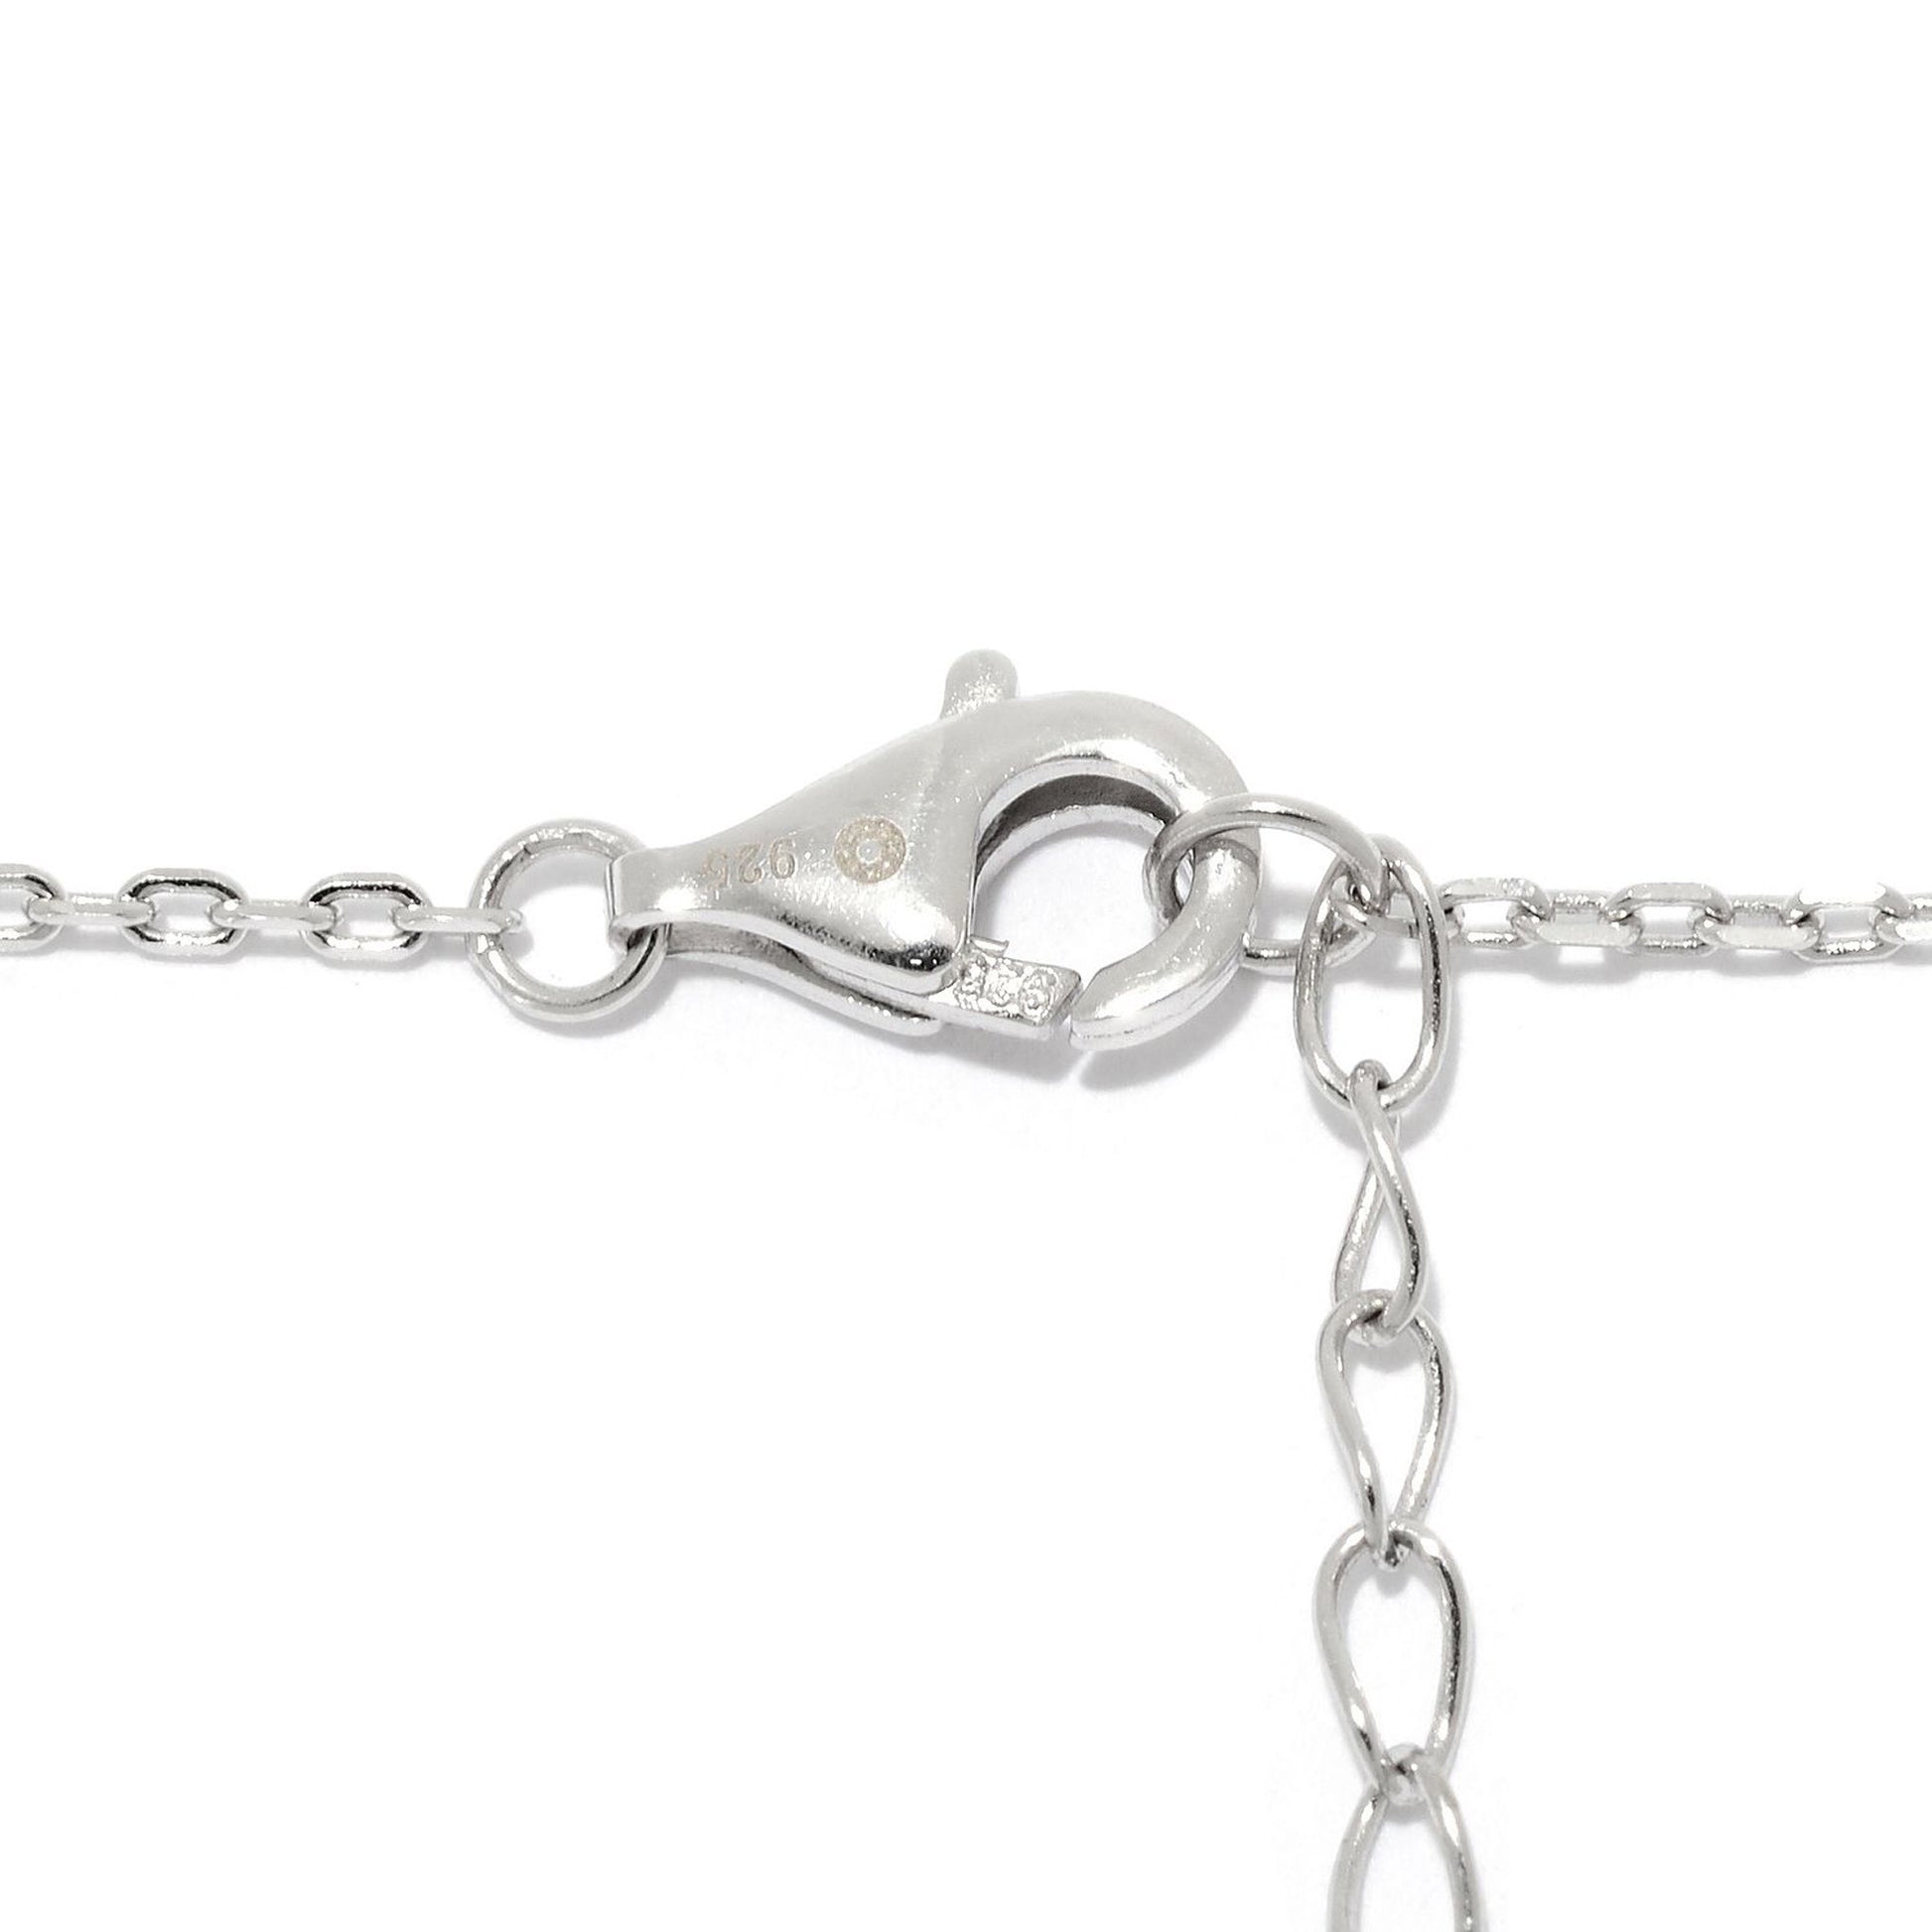 Sterling Silver Tanzanite Pendant Pendant 1.68"L With 18" Chain - Pinctore